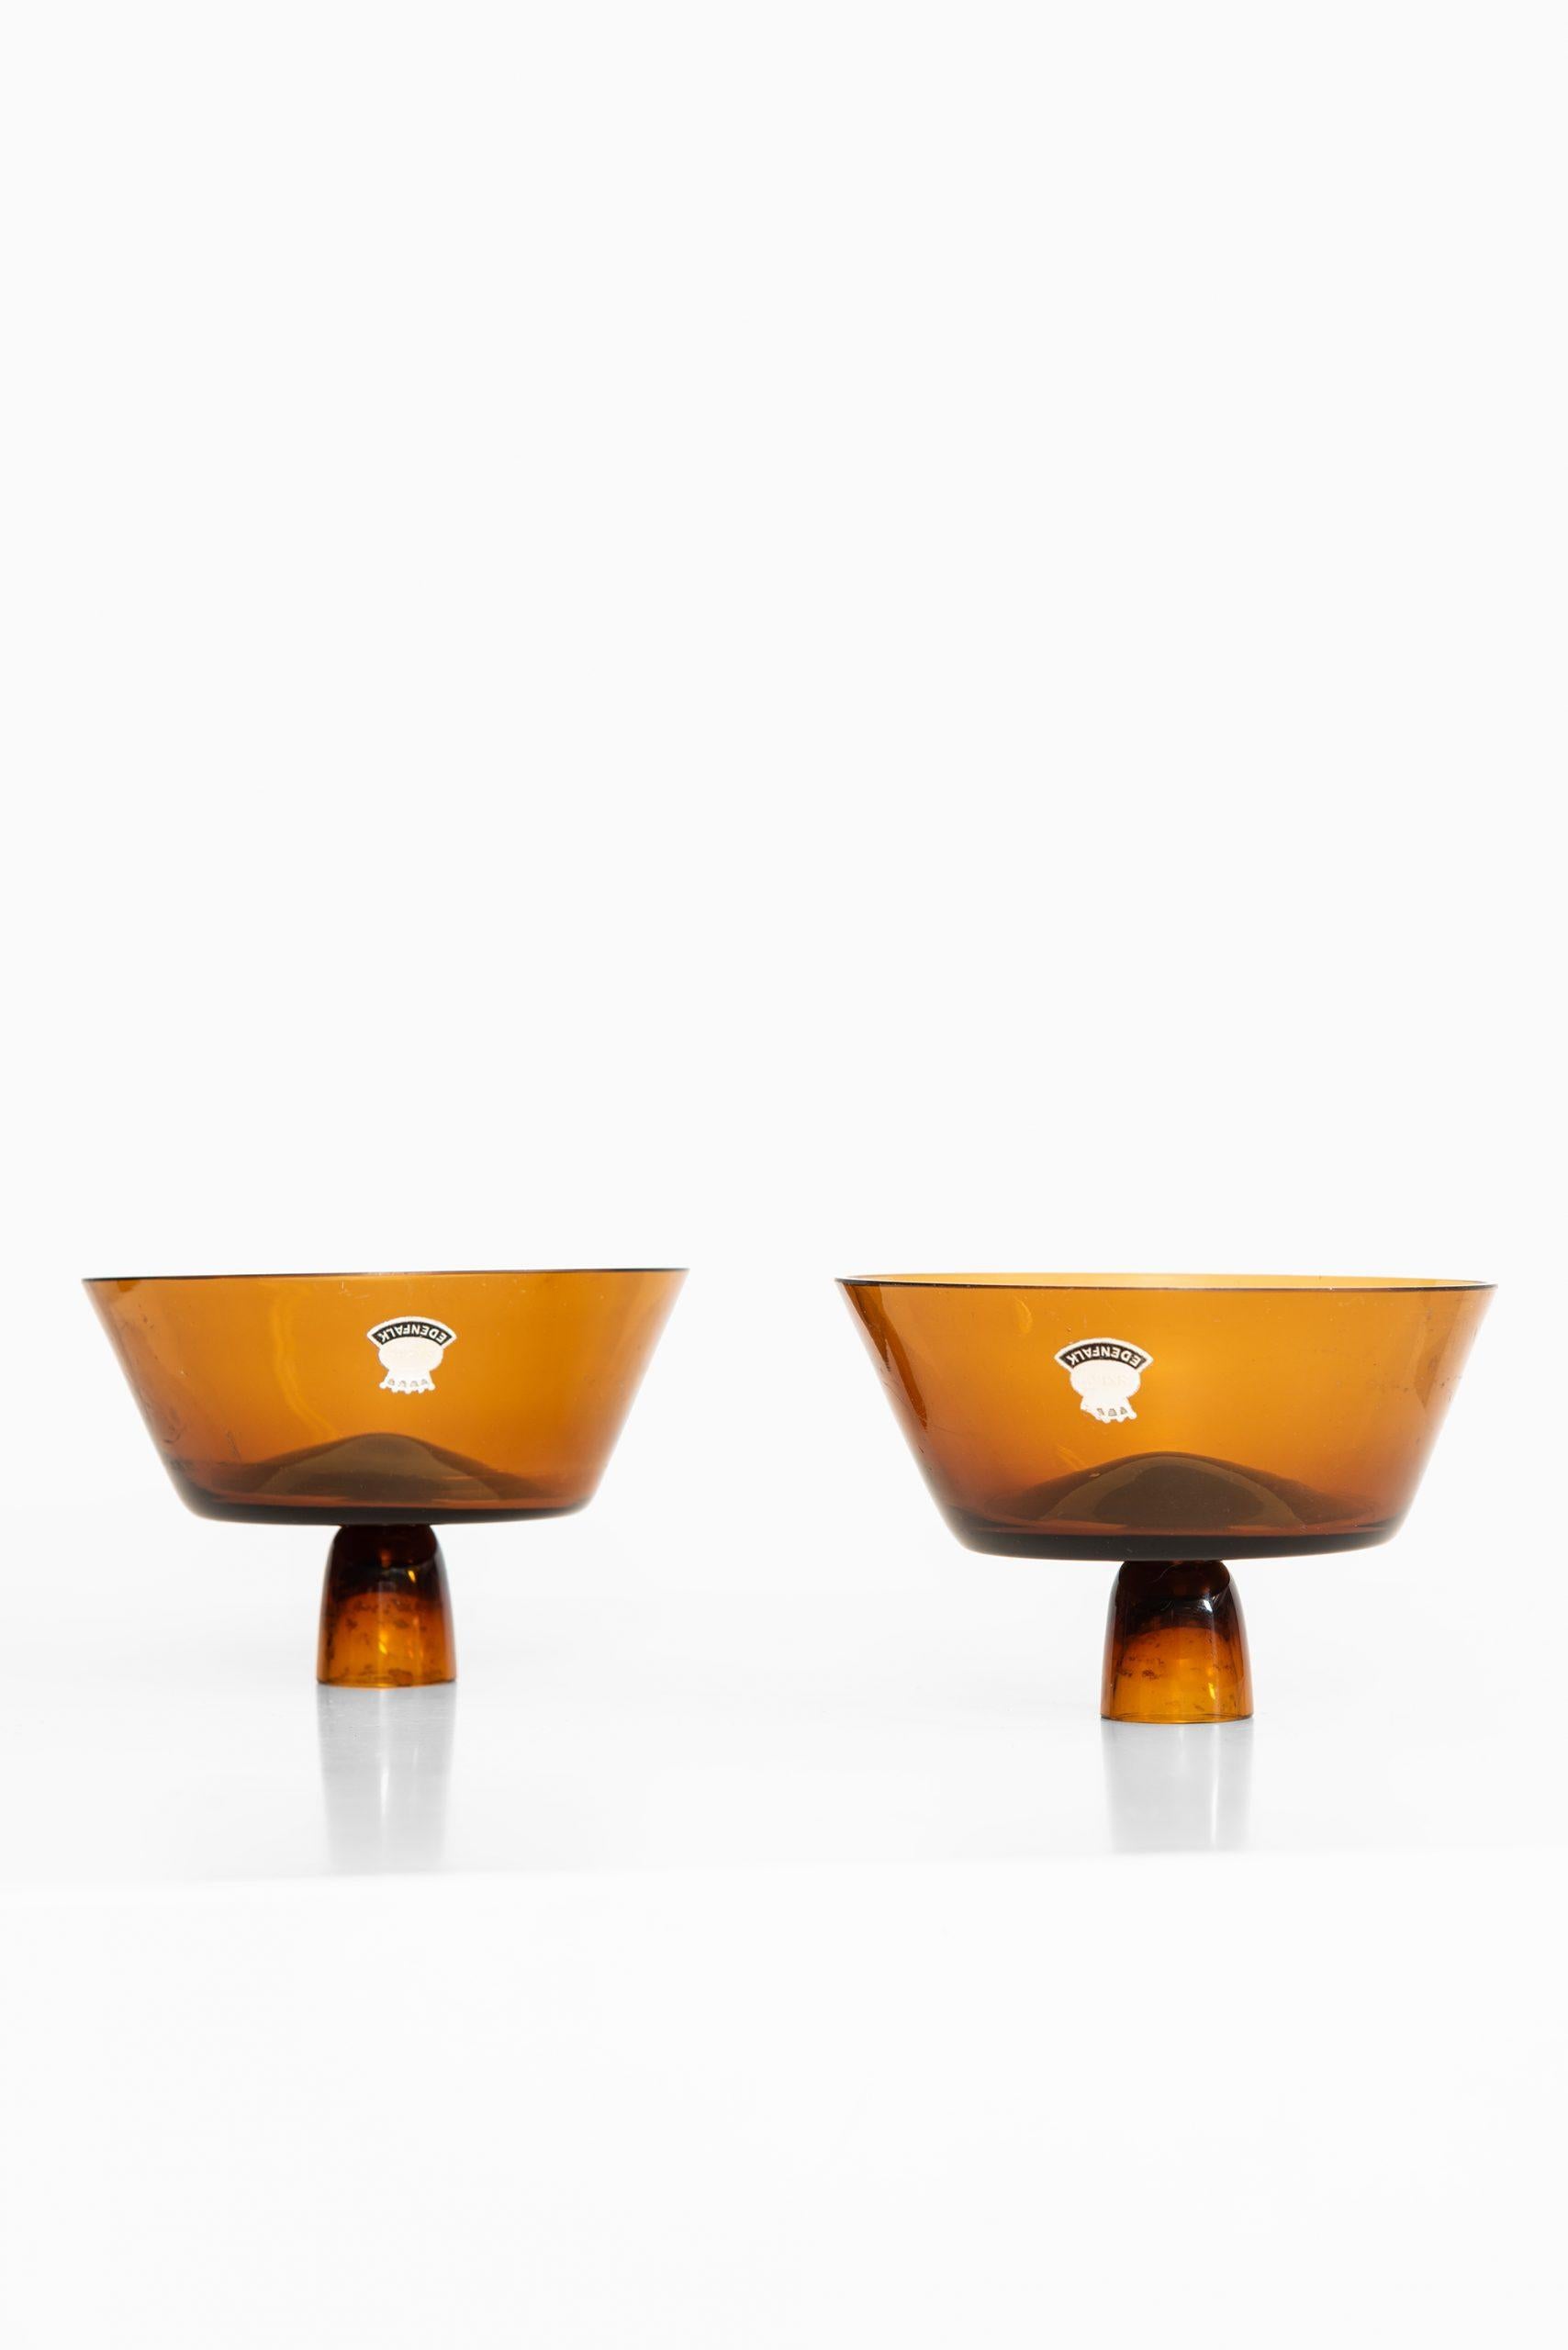 Scandinavian Modern Bengt Edenfalk Candlesticks / Vases Produced by Skruf in Sweden For Sale